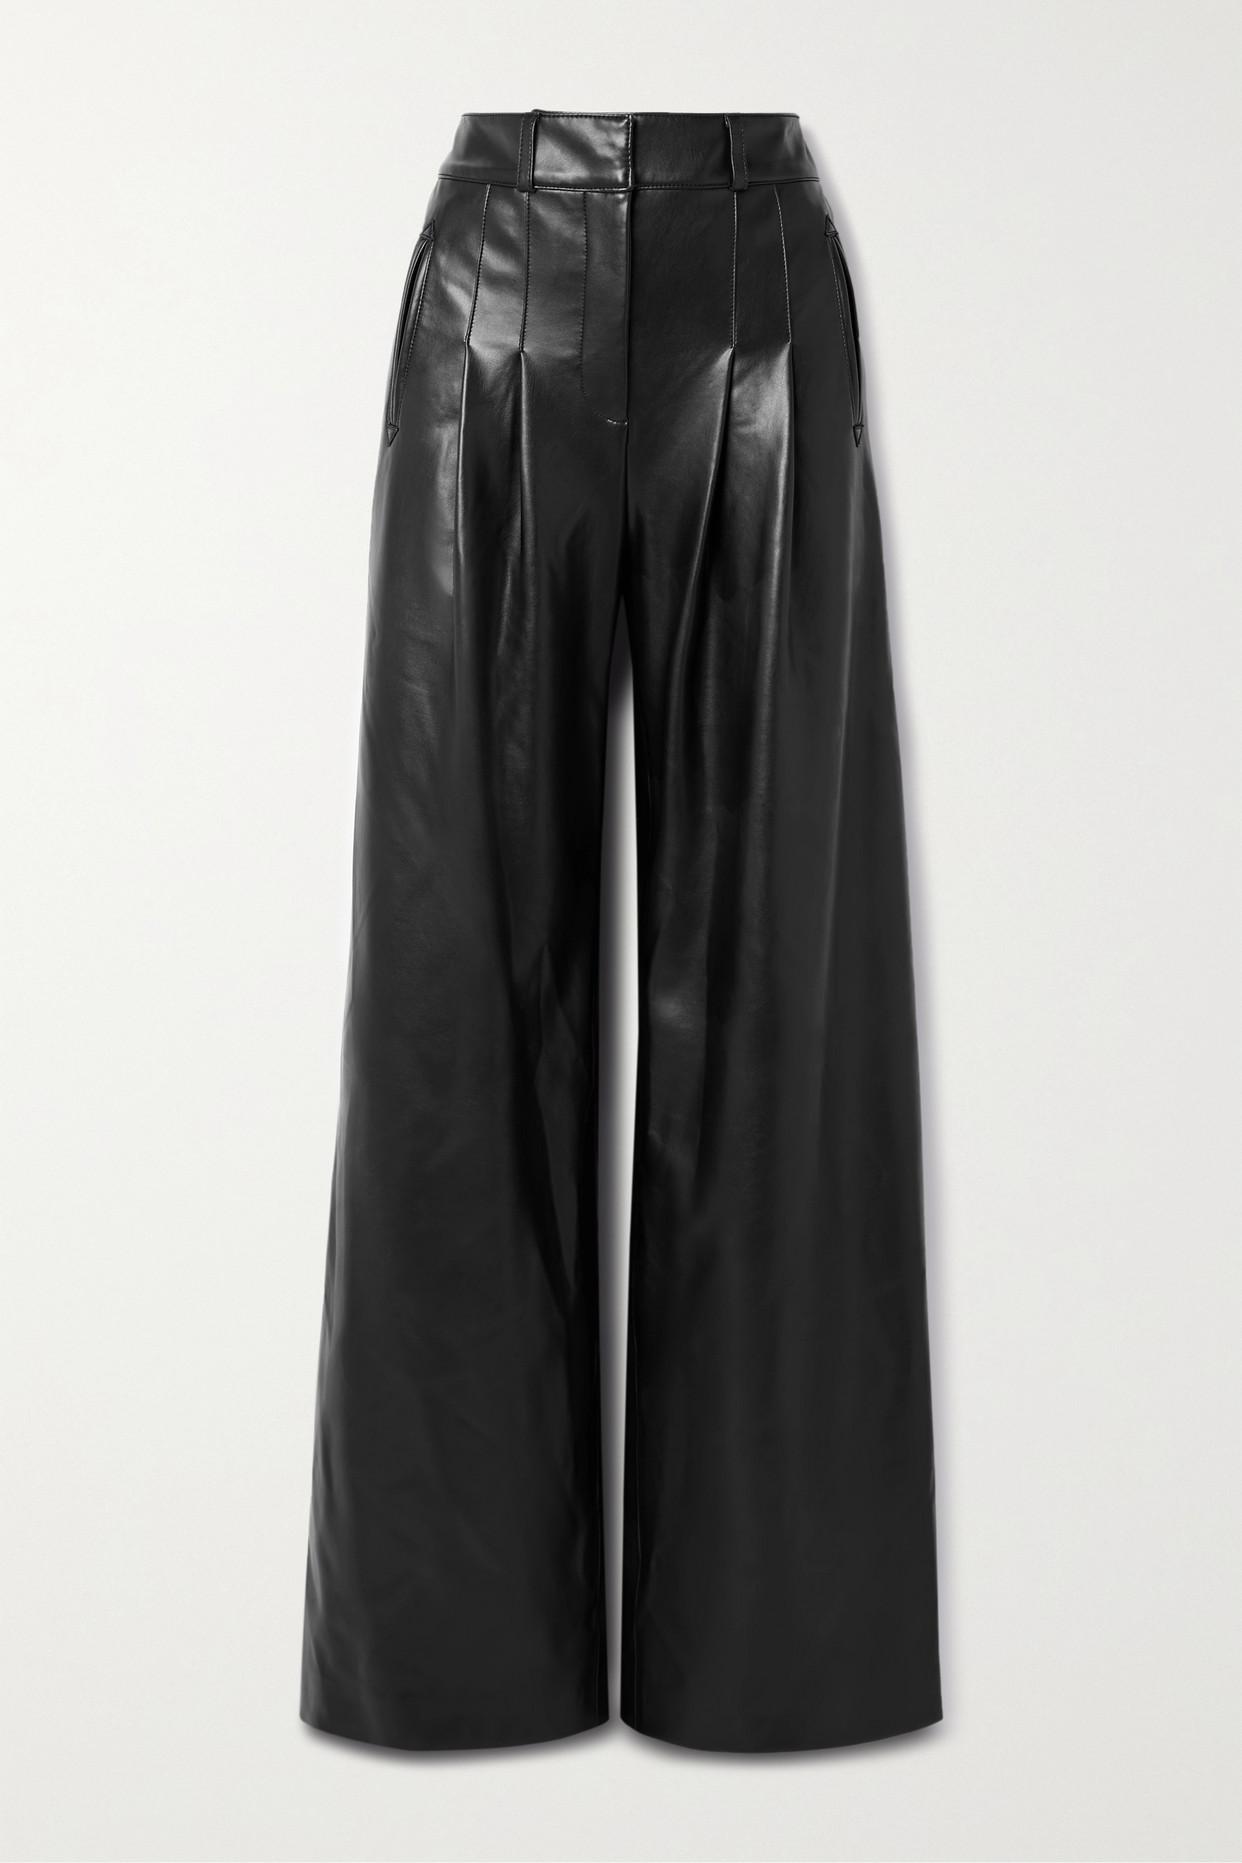 Veronica Beard Rennert Pleated Faux Leather Wide-leg Pants in Black | Lyst